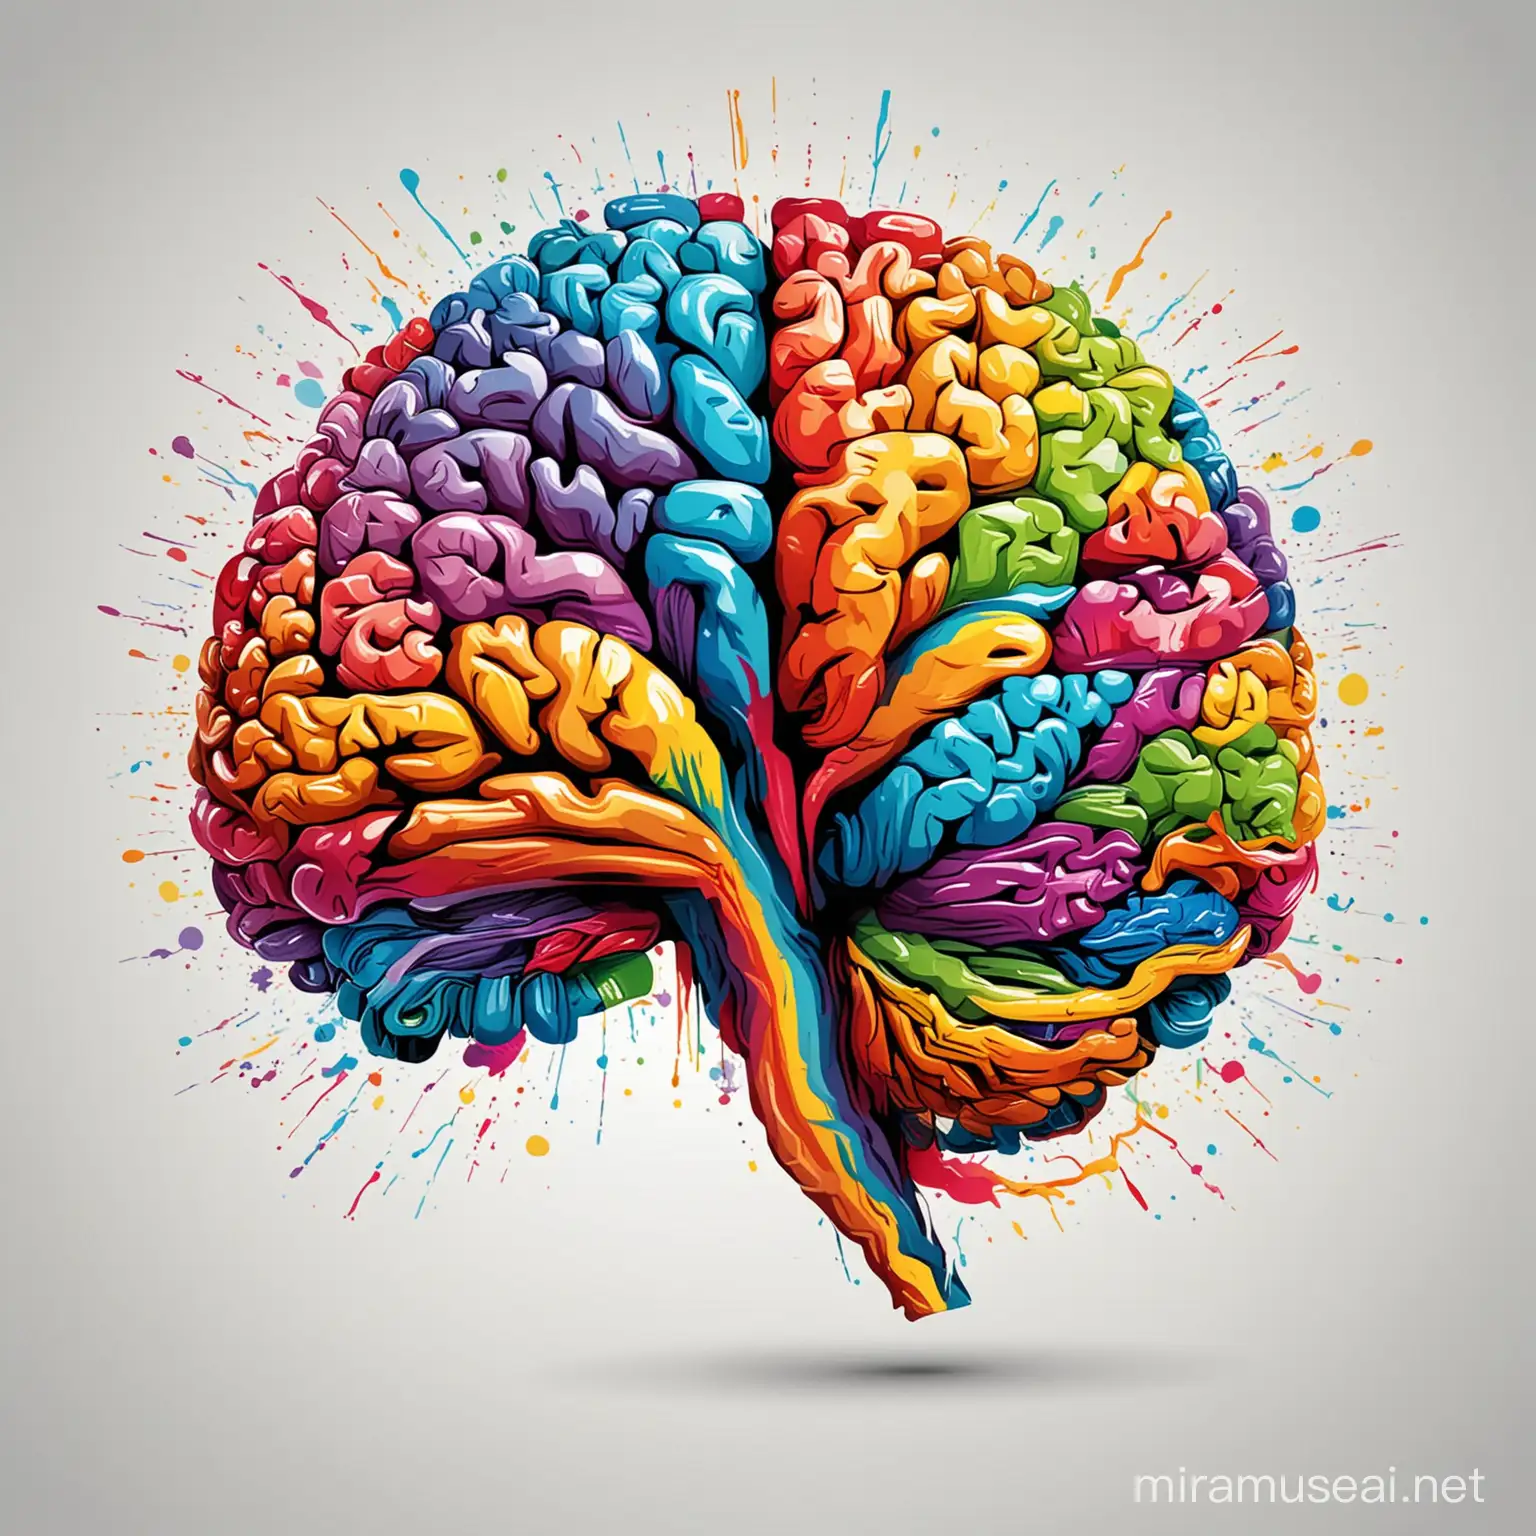 abstrakcyjny kolorowy obraz mózgu ludzkiego. styl pop art. białe tło. grafika wektorowa